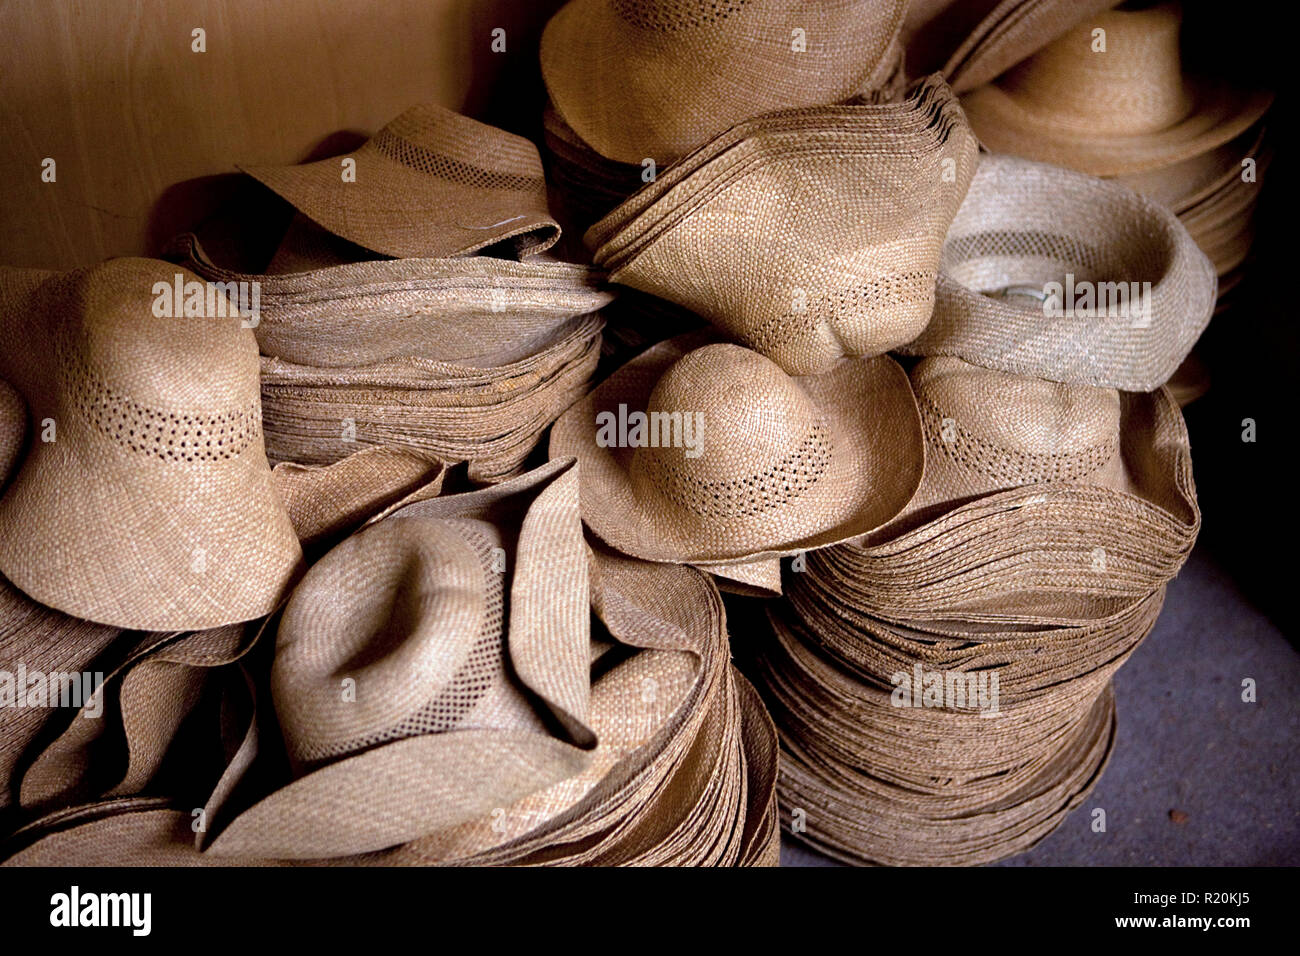 9 décembre 2009 - Coustilleres' hat factory, Septfonds, France - les  chapeaux de paille à l'Coustilleres' hat factory. Septfonds est le cœur de  la Straw Hat, à cause de sa très ancienne